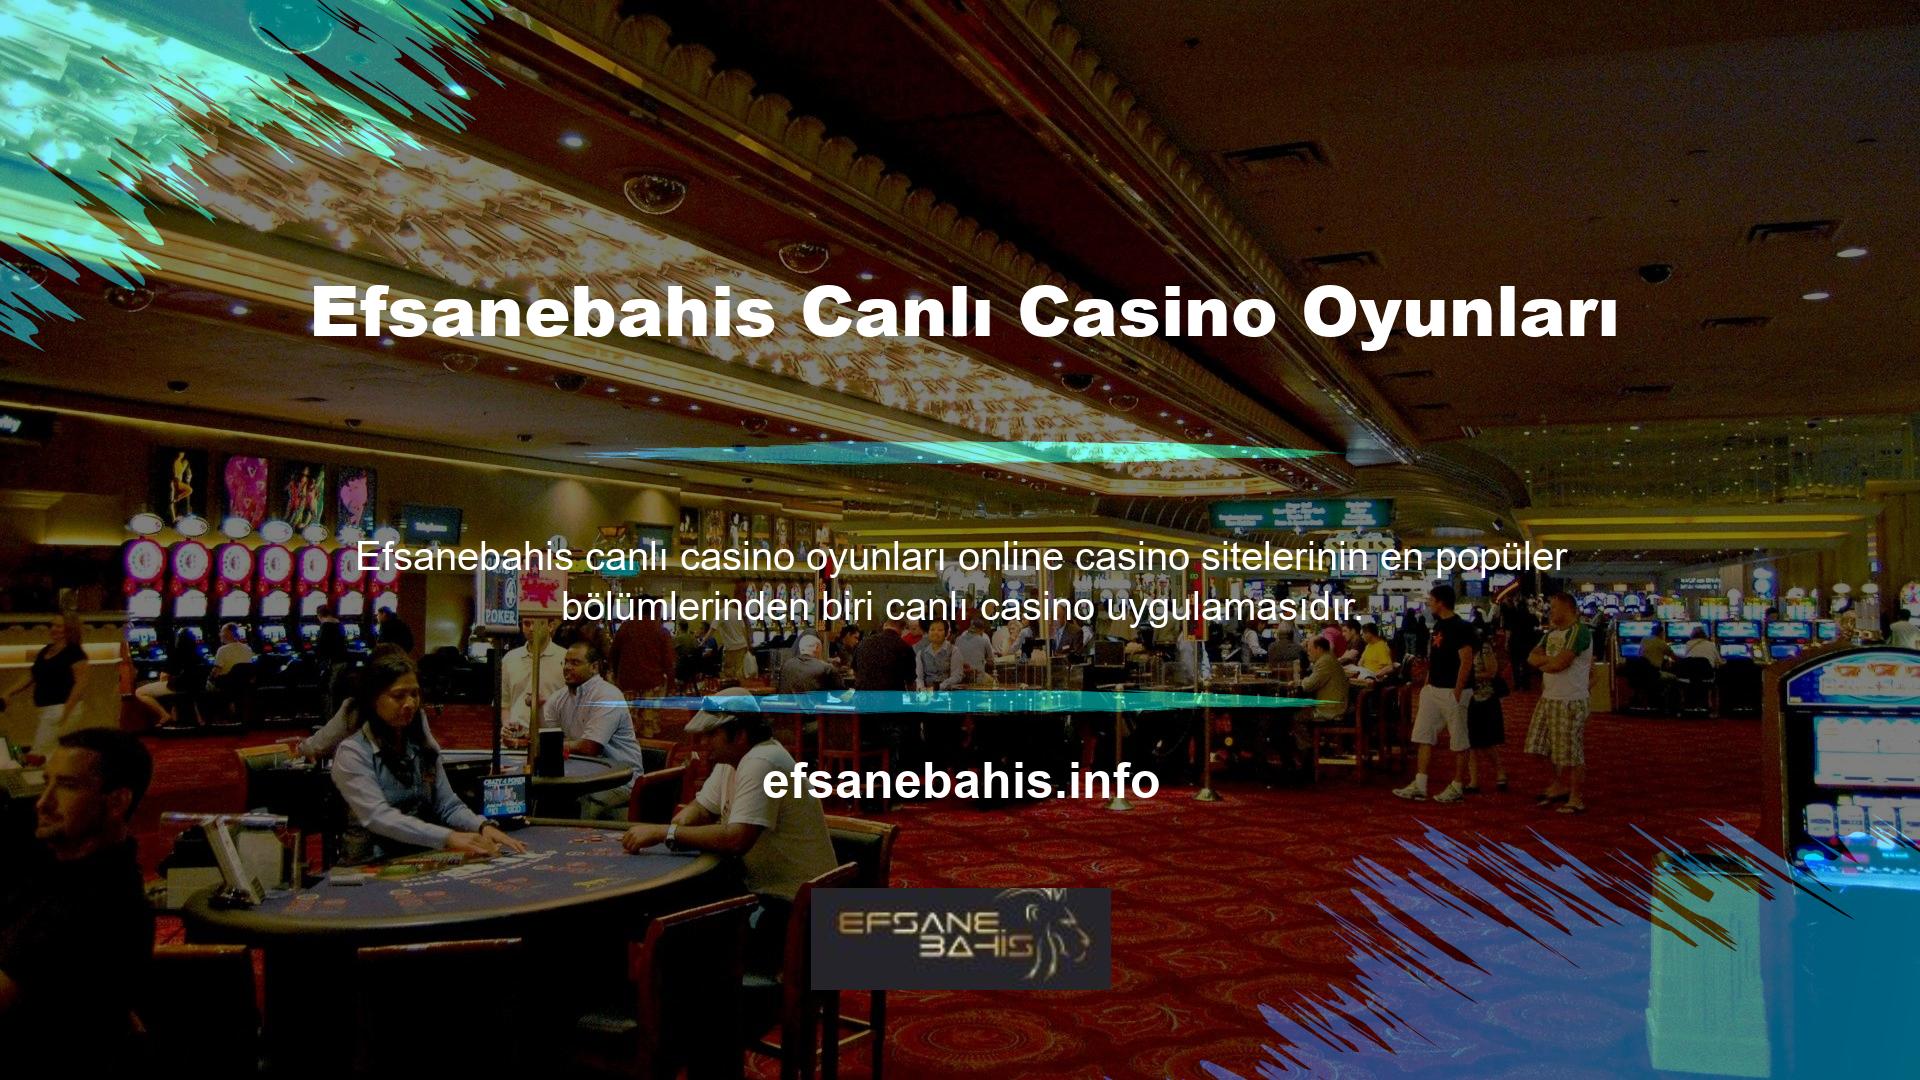 Canlı casino uygulamaları, gerçek rakipler ve krupiyerlerin yanında bahis seçenekleri sunar